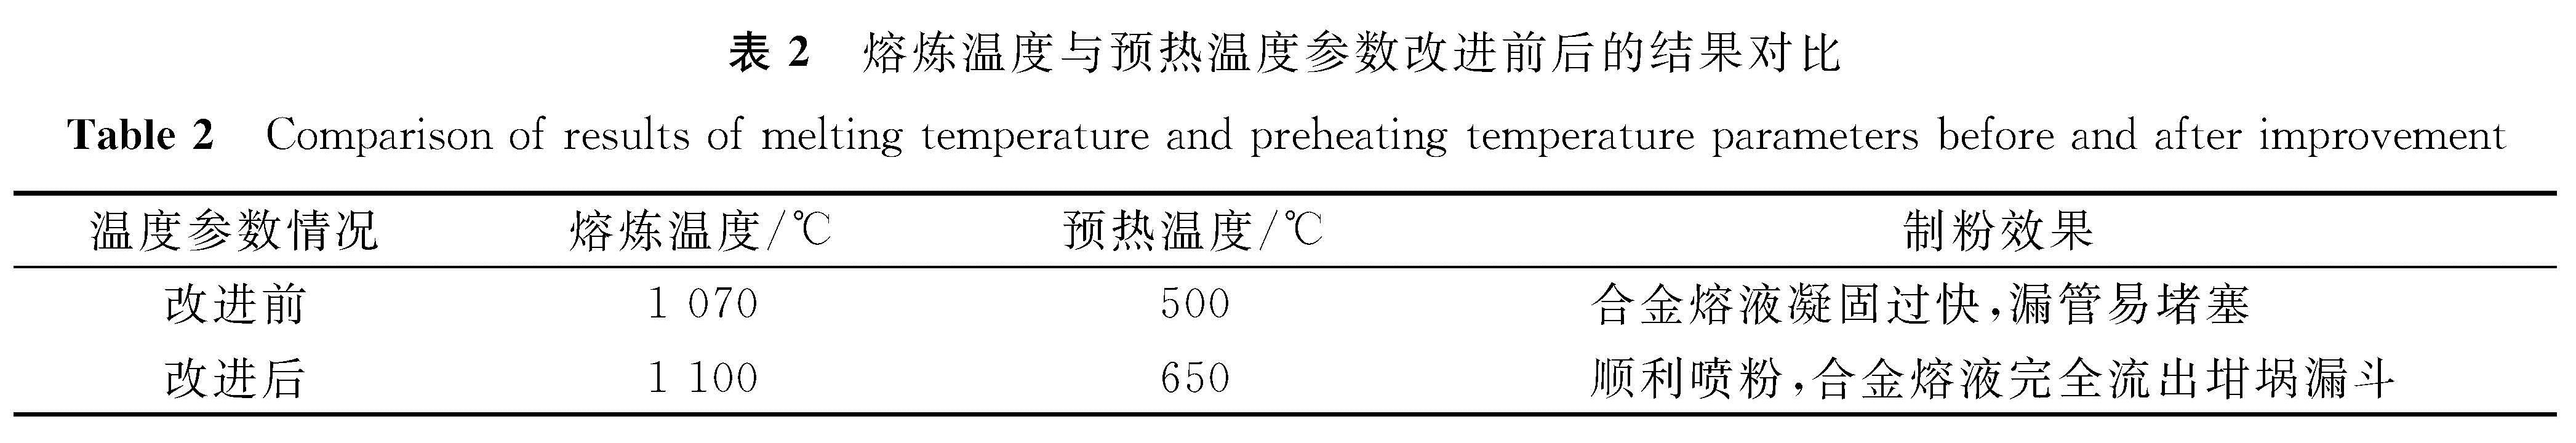 表2 熔炼温度与预热温度参数改进前后的结果对比<br/>Table 2 Comparison of results of melting temperature and preheating temperature parameters before and after improvement